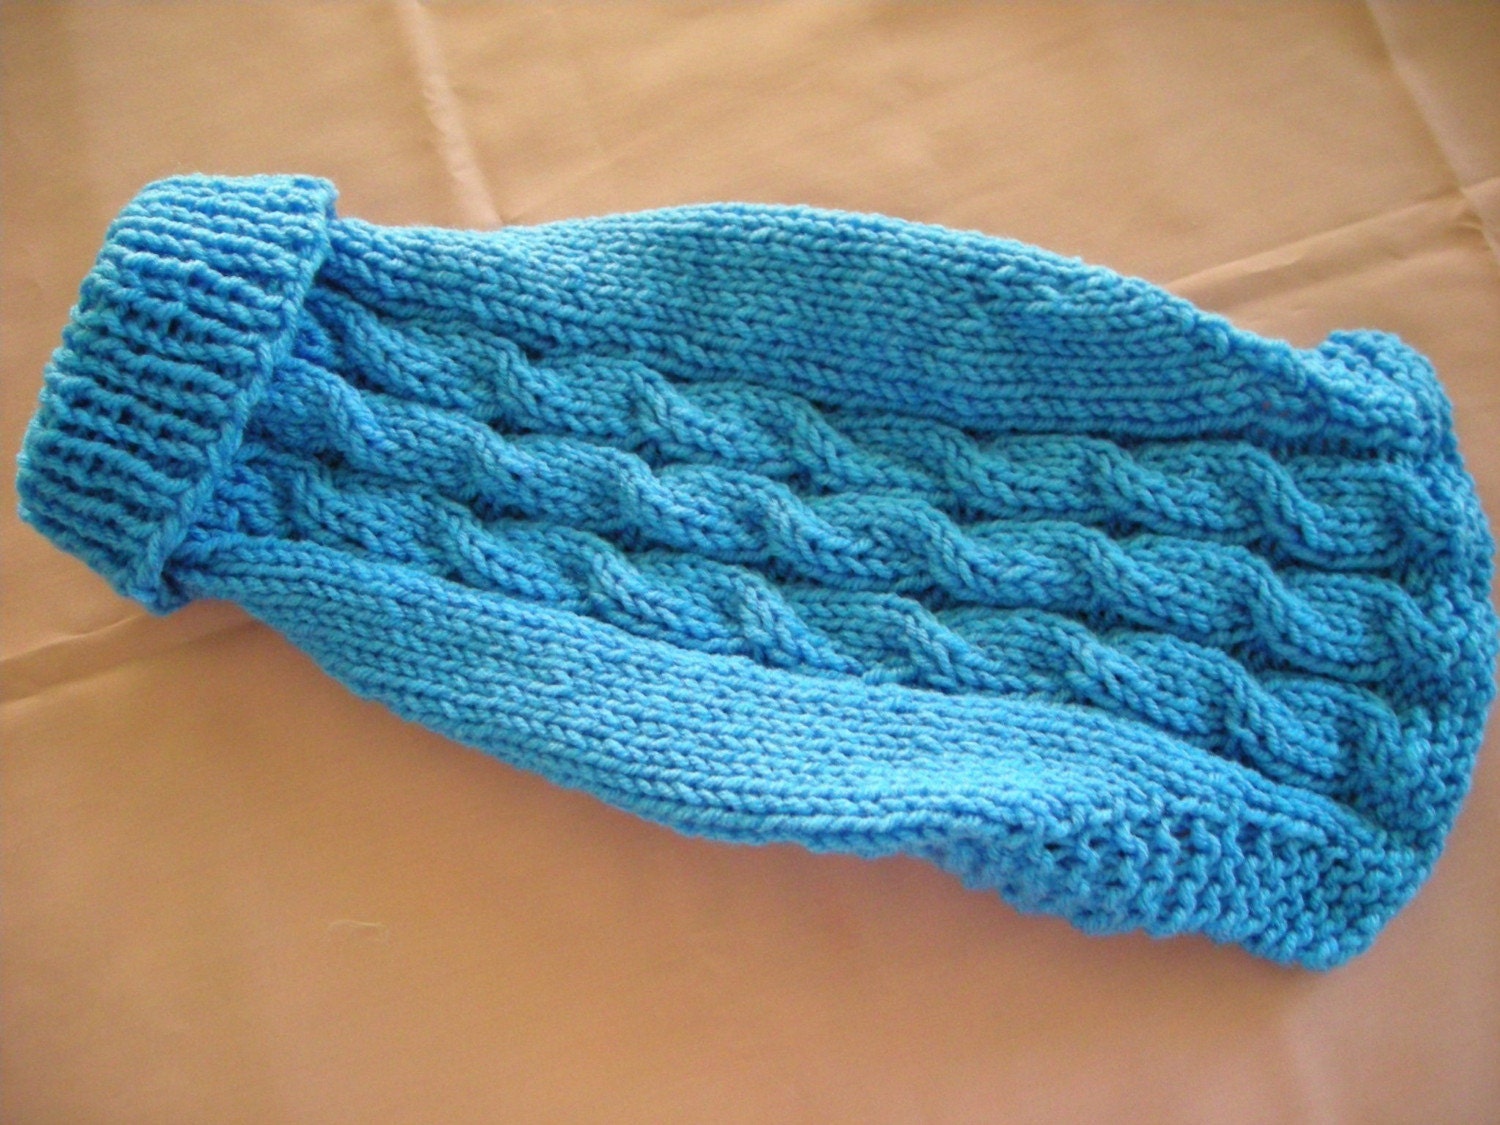 Yarn, knitting yarns, knitting patterns, crochet patterns